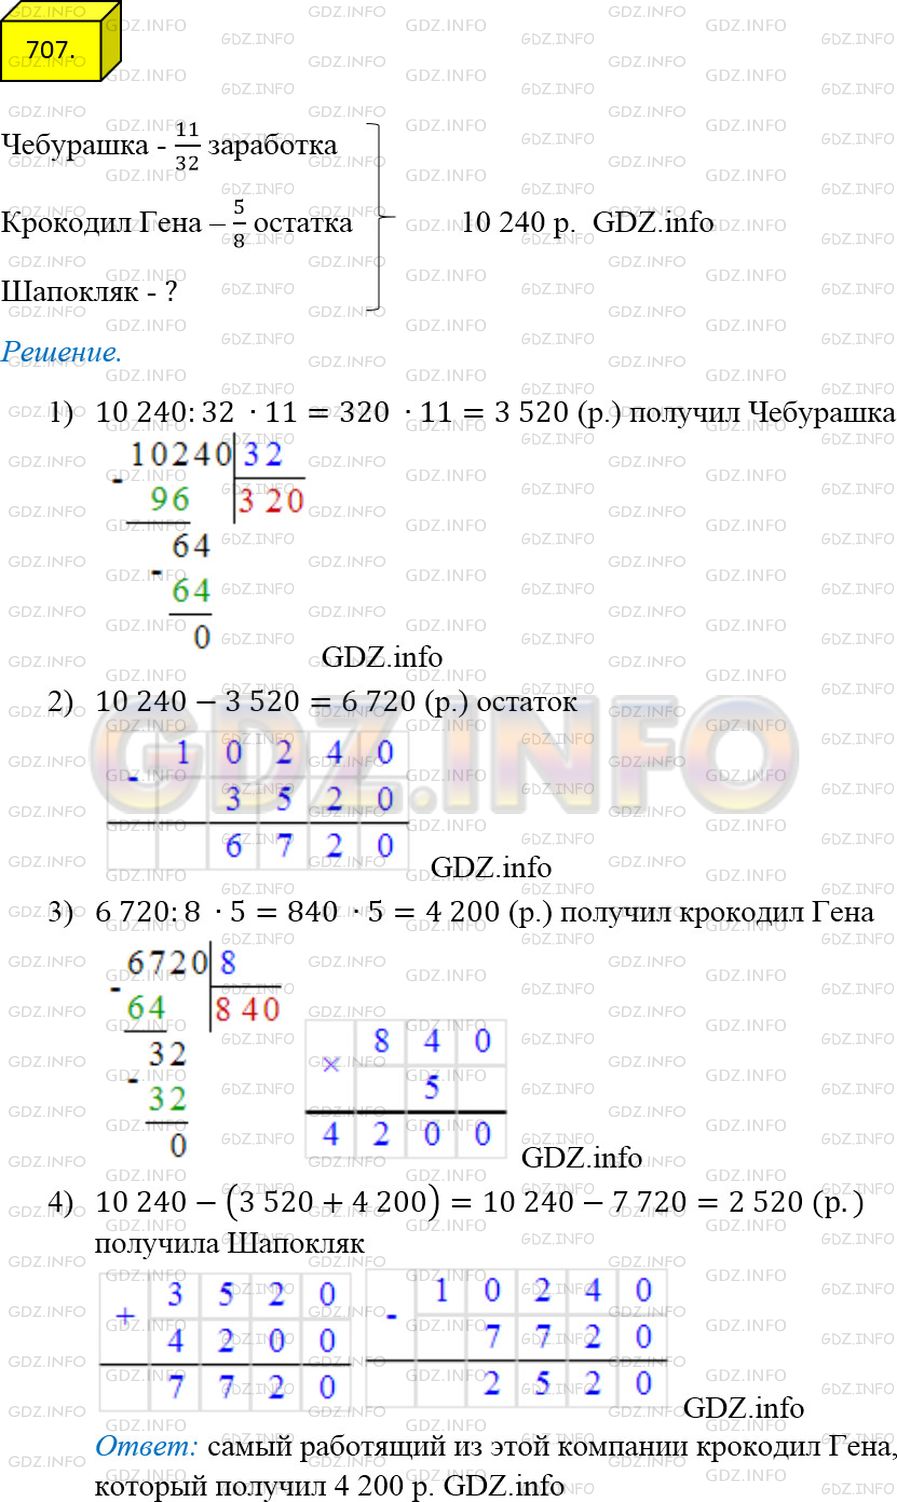 Фото ответа 4 на Задание 707 из ГДЗ по Математике за 5 класс: А.Г. Мерзляк, В.Б. Полонский, М.С. Якир. 2014г.